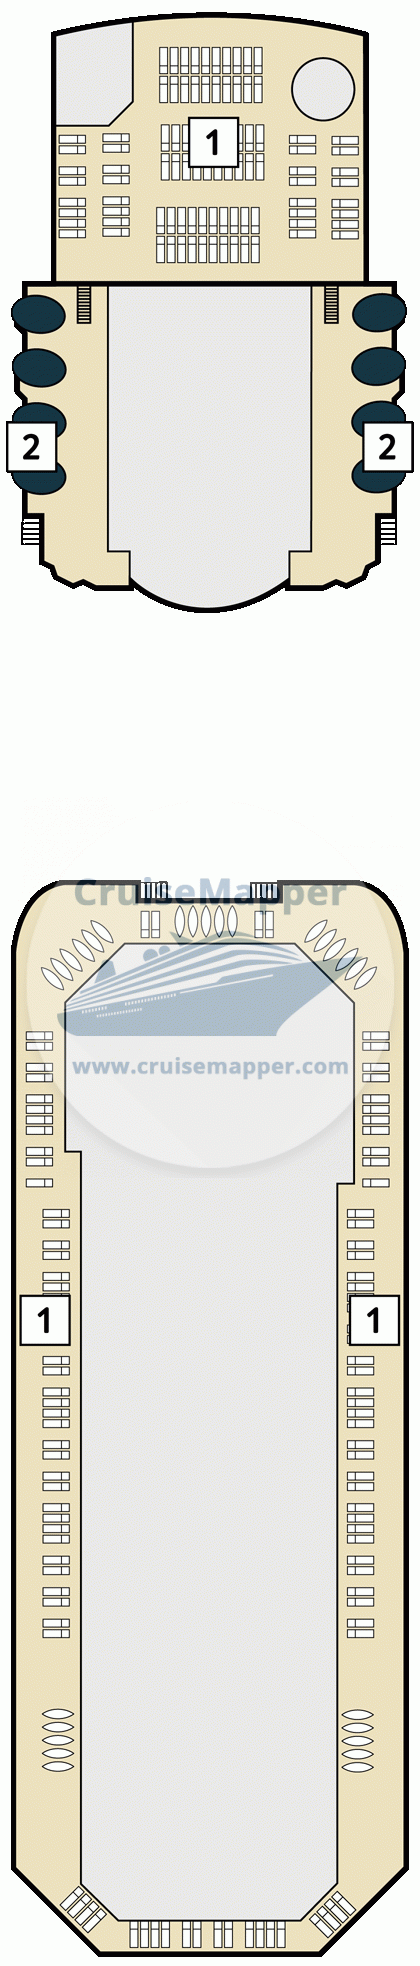 Marella Voyager Deck 24 - Mein Schiff Herz-deck14-Brise